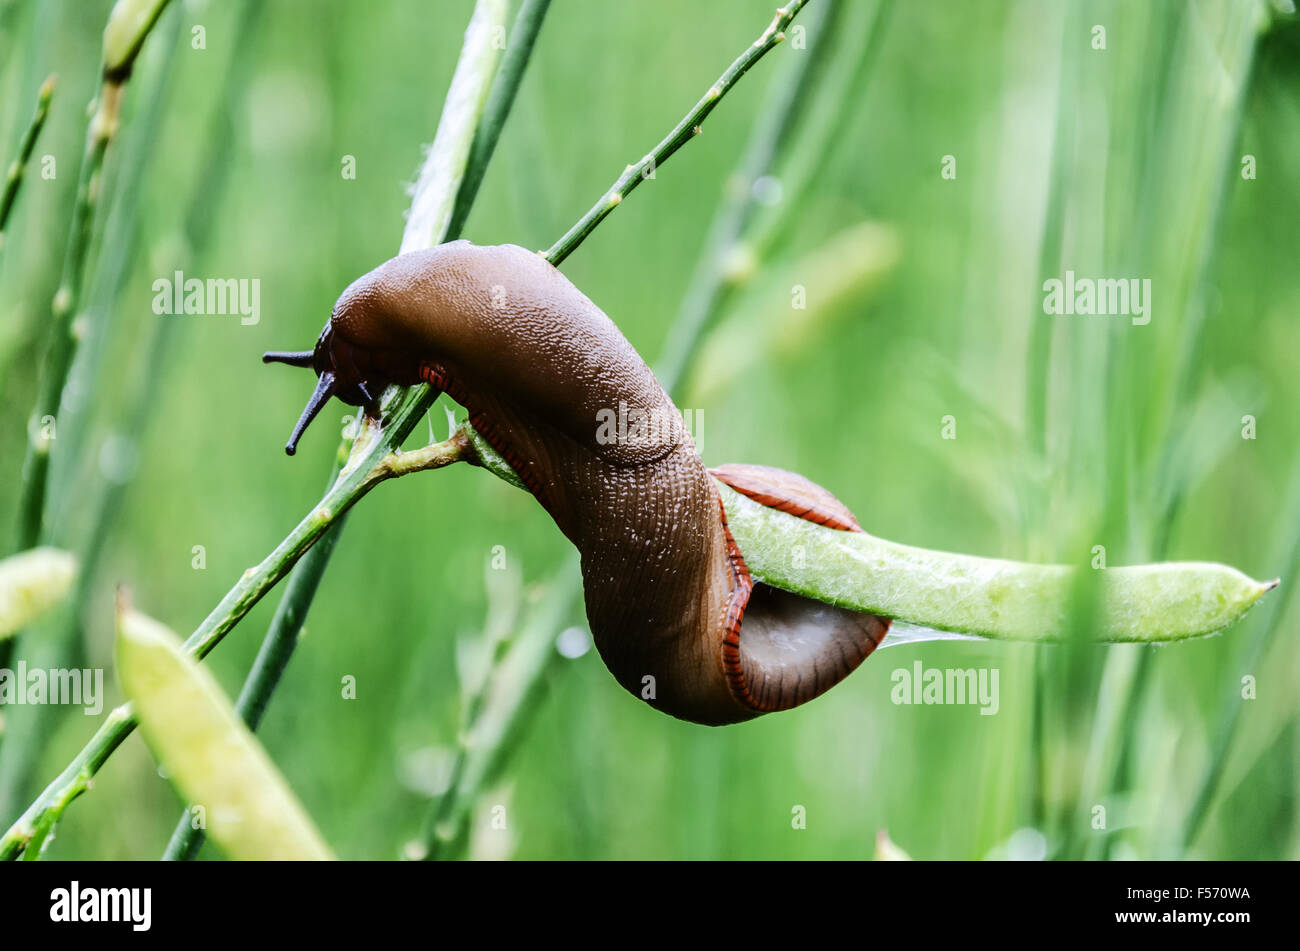 Deroceras reticulatum, common names the 'grey field slug' and 'grey garden slug', is a species of small air-breathing land slug, Stock Photo